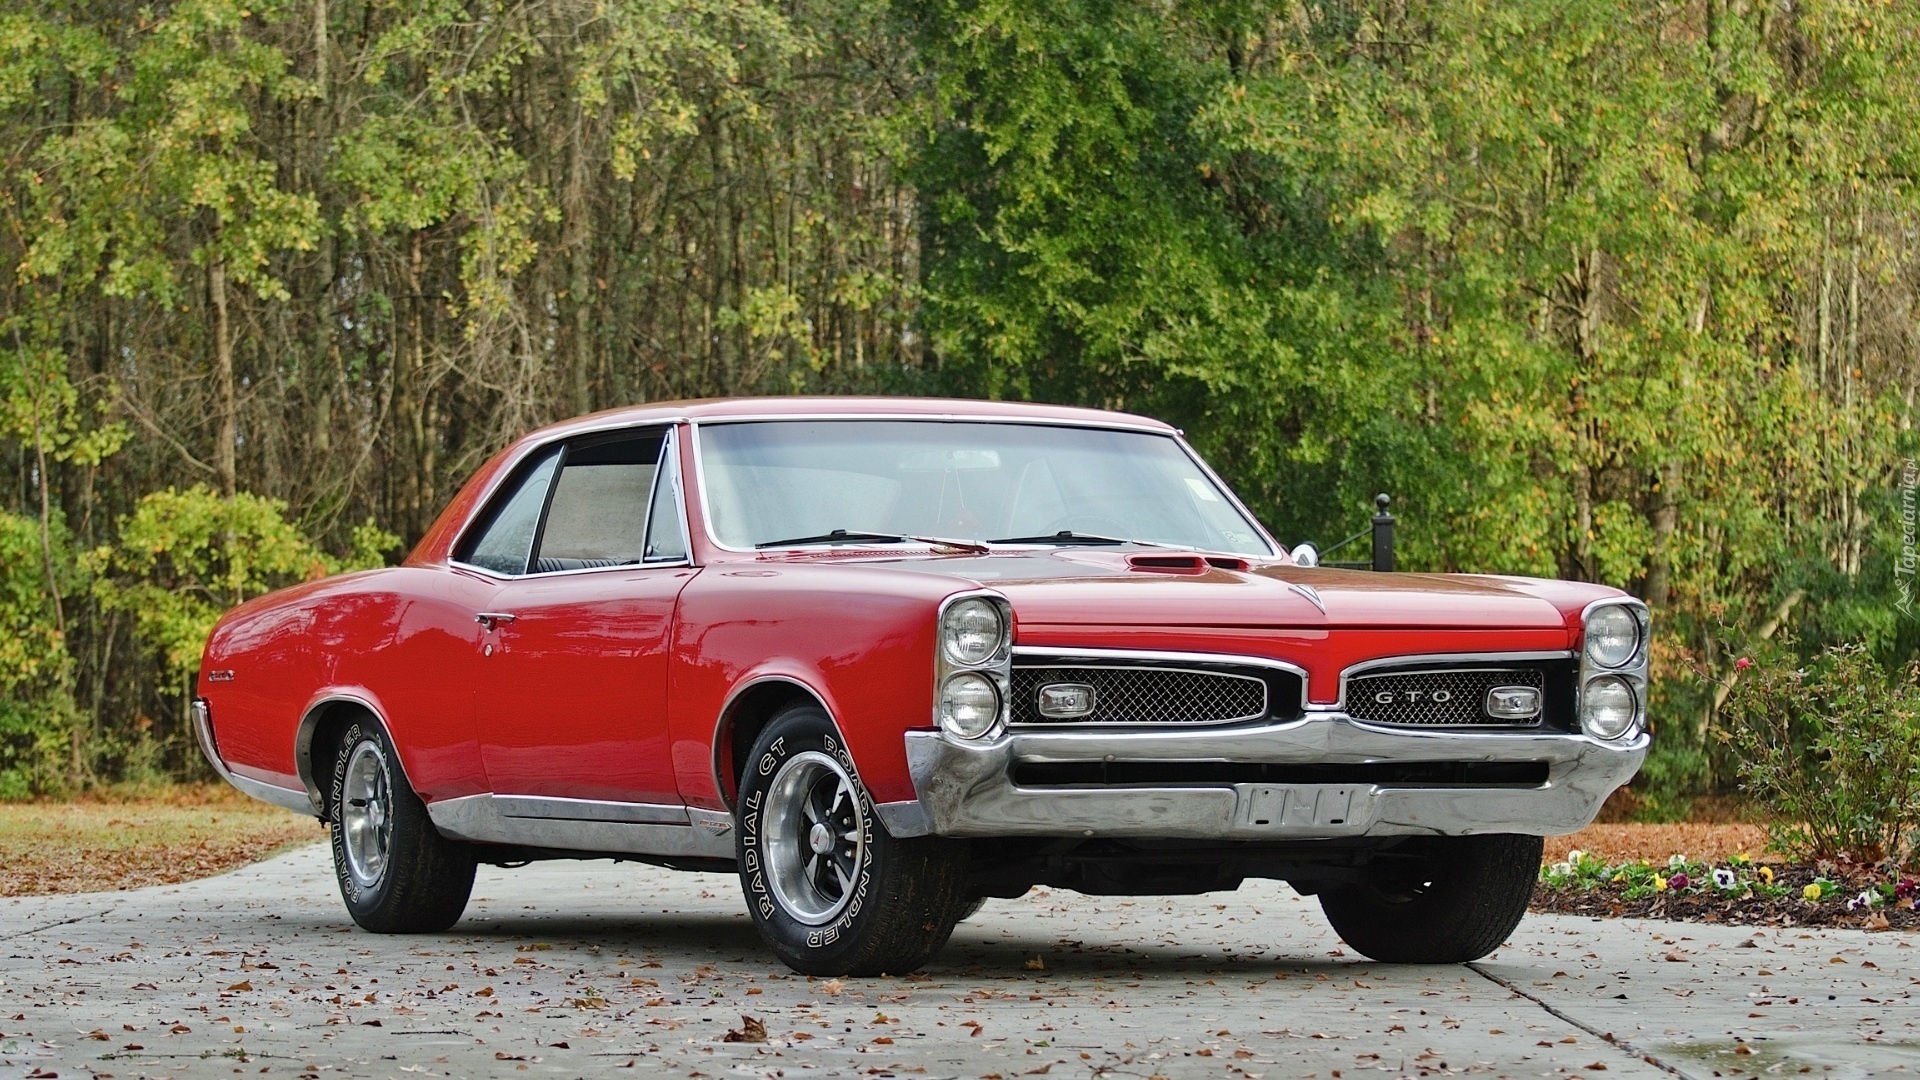 Pontiac, Samochód, Czerwony, GTO, 1967, Zabytek